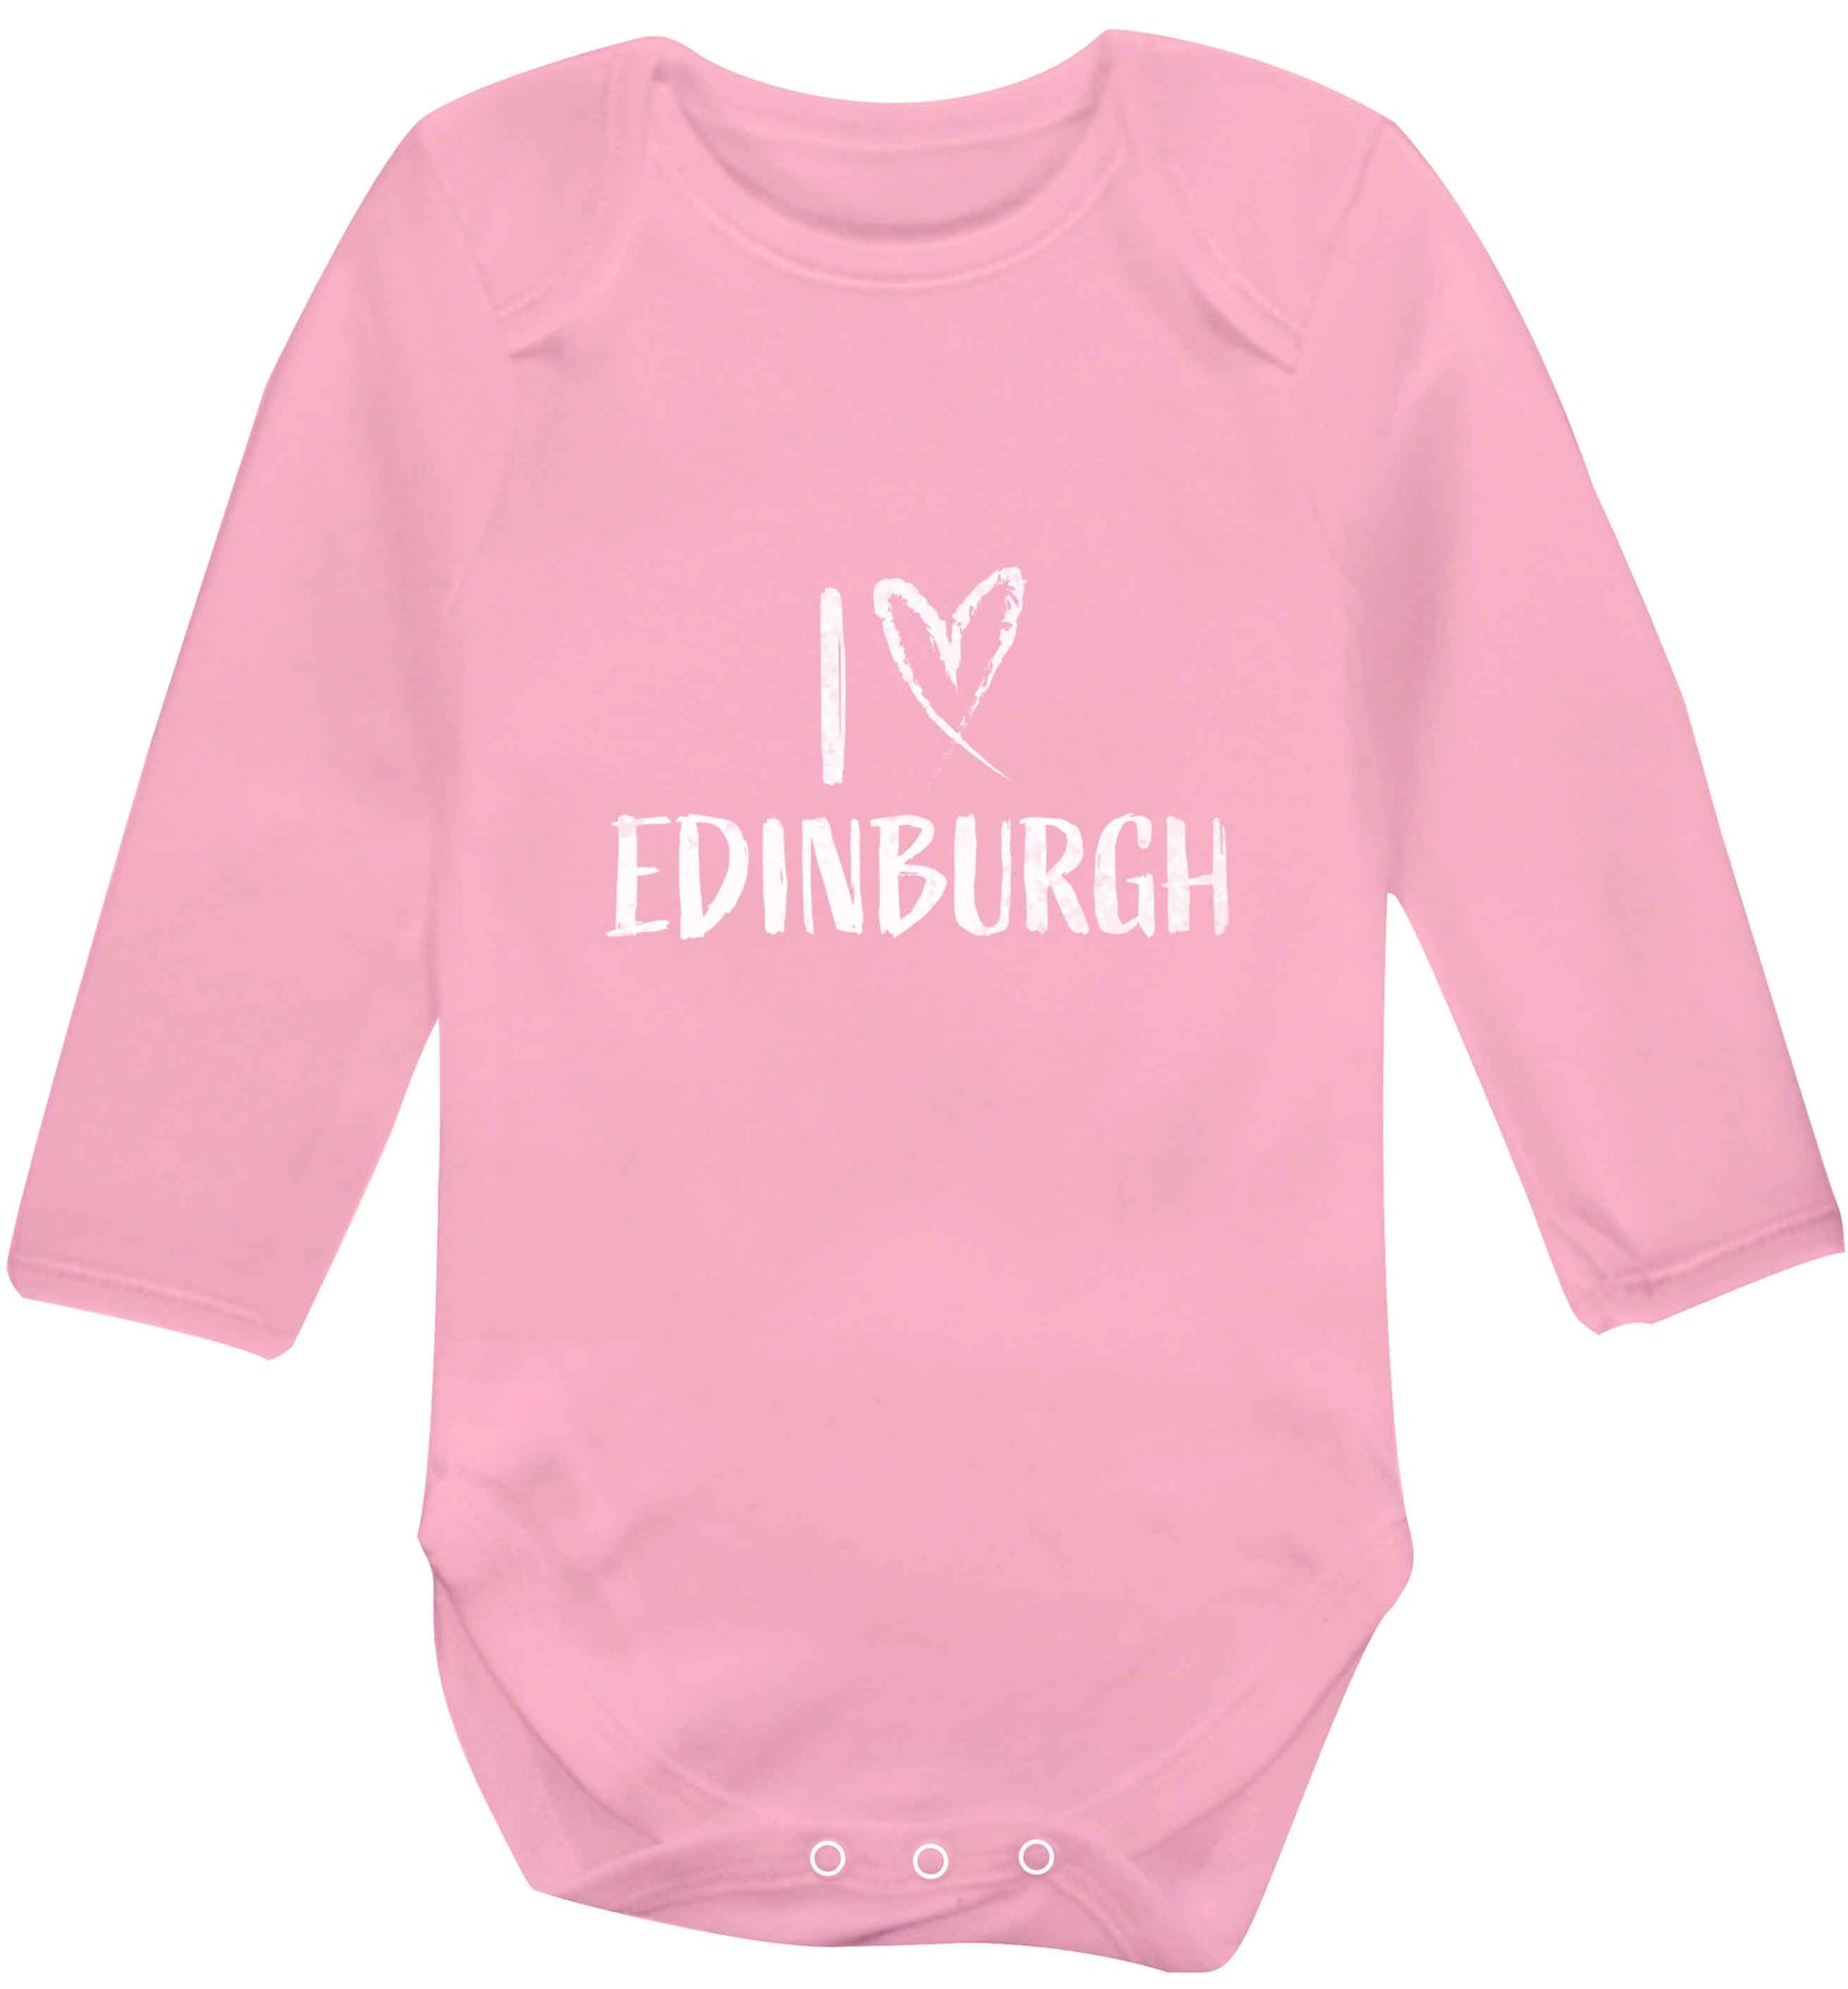 I love Edinburgh baby vest long sleeved pale pink 6-12 months